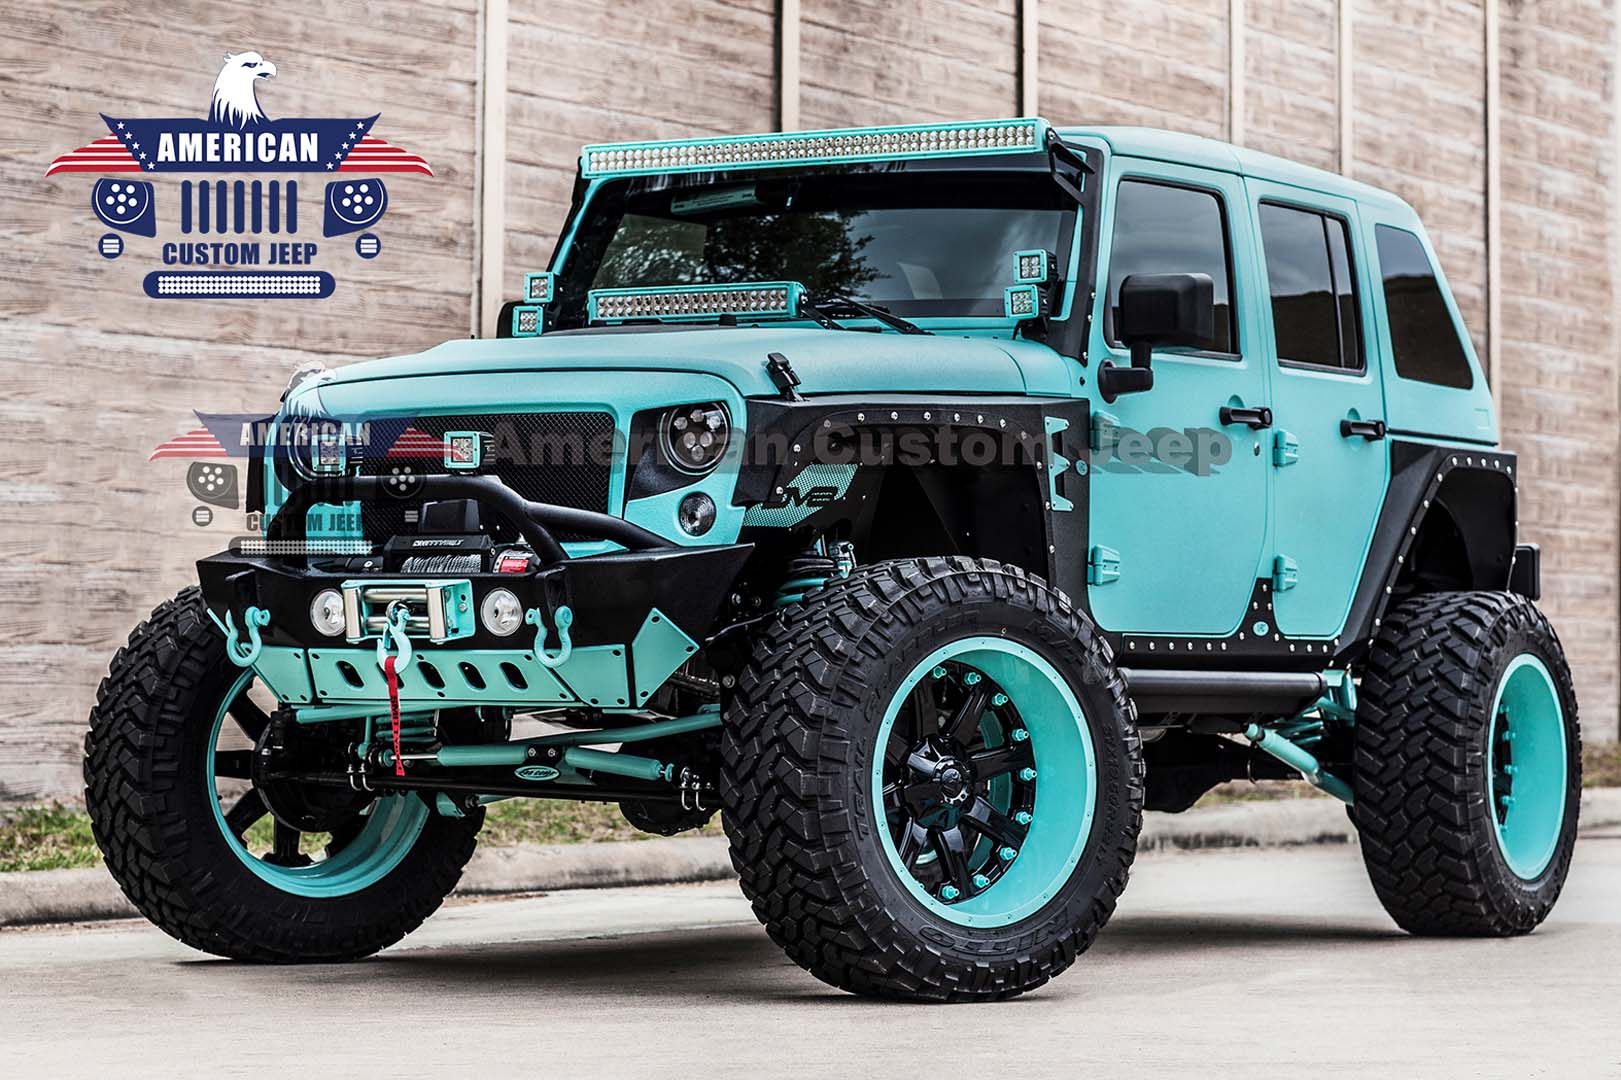 Tiffany Blue Kevlar Edition Houston Tx American Custom Jeep